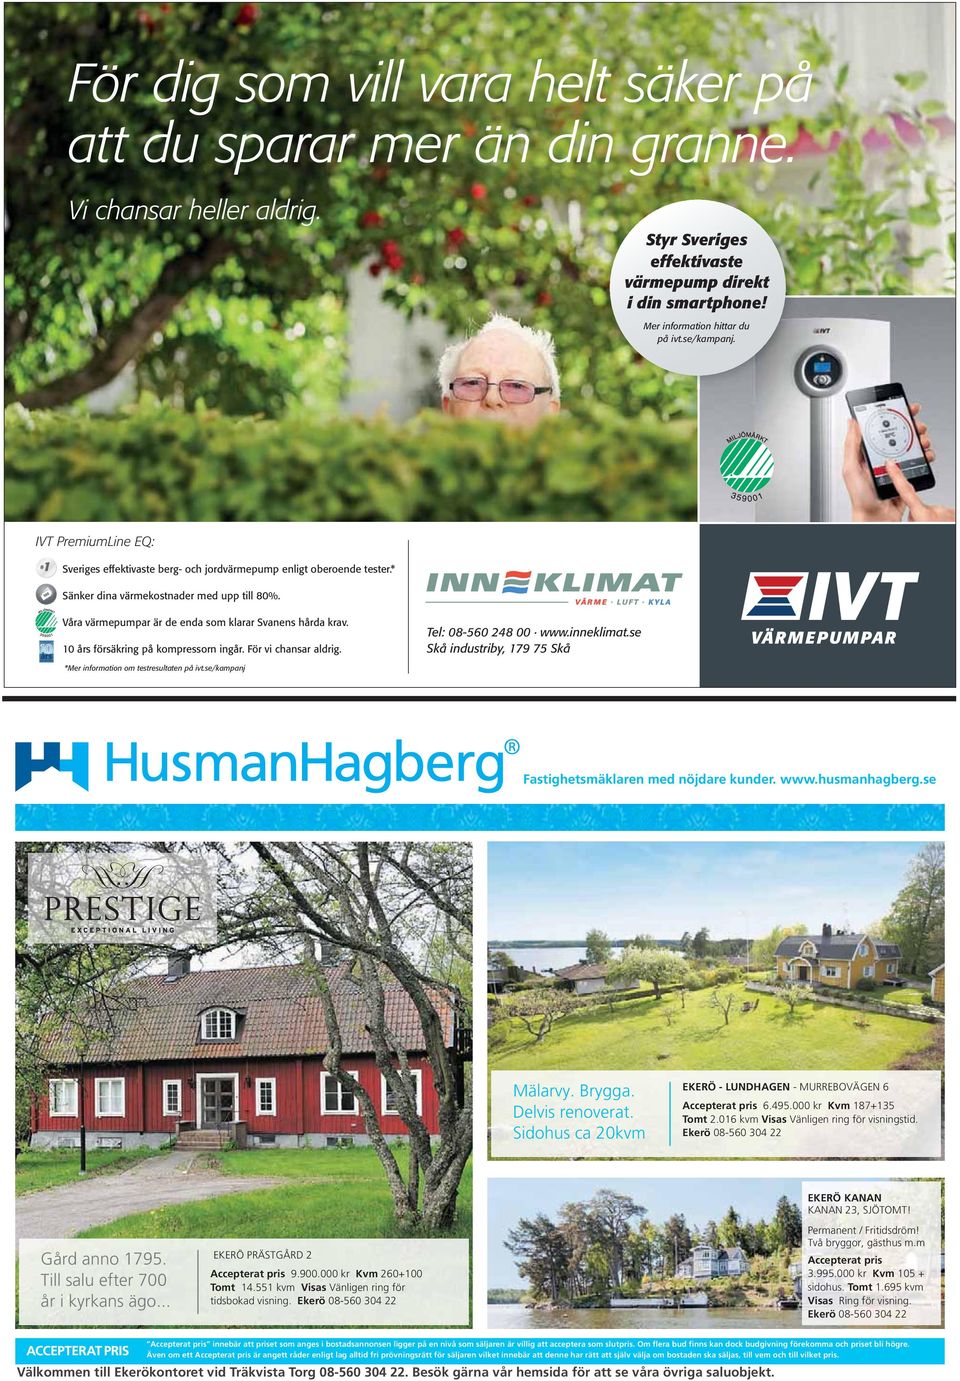 IVT PremiumLine EQ: # 1 Sveriges effektivaste berg- och jordvärmepump enligt oberoende tester.* Sänker dina värmekostnader med upp till 80%.